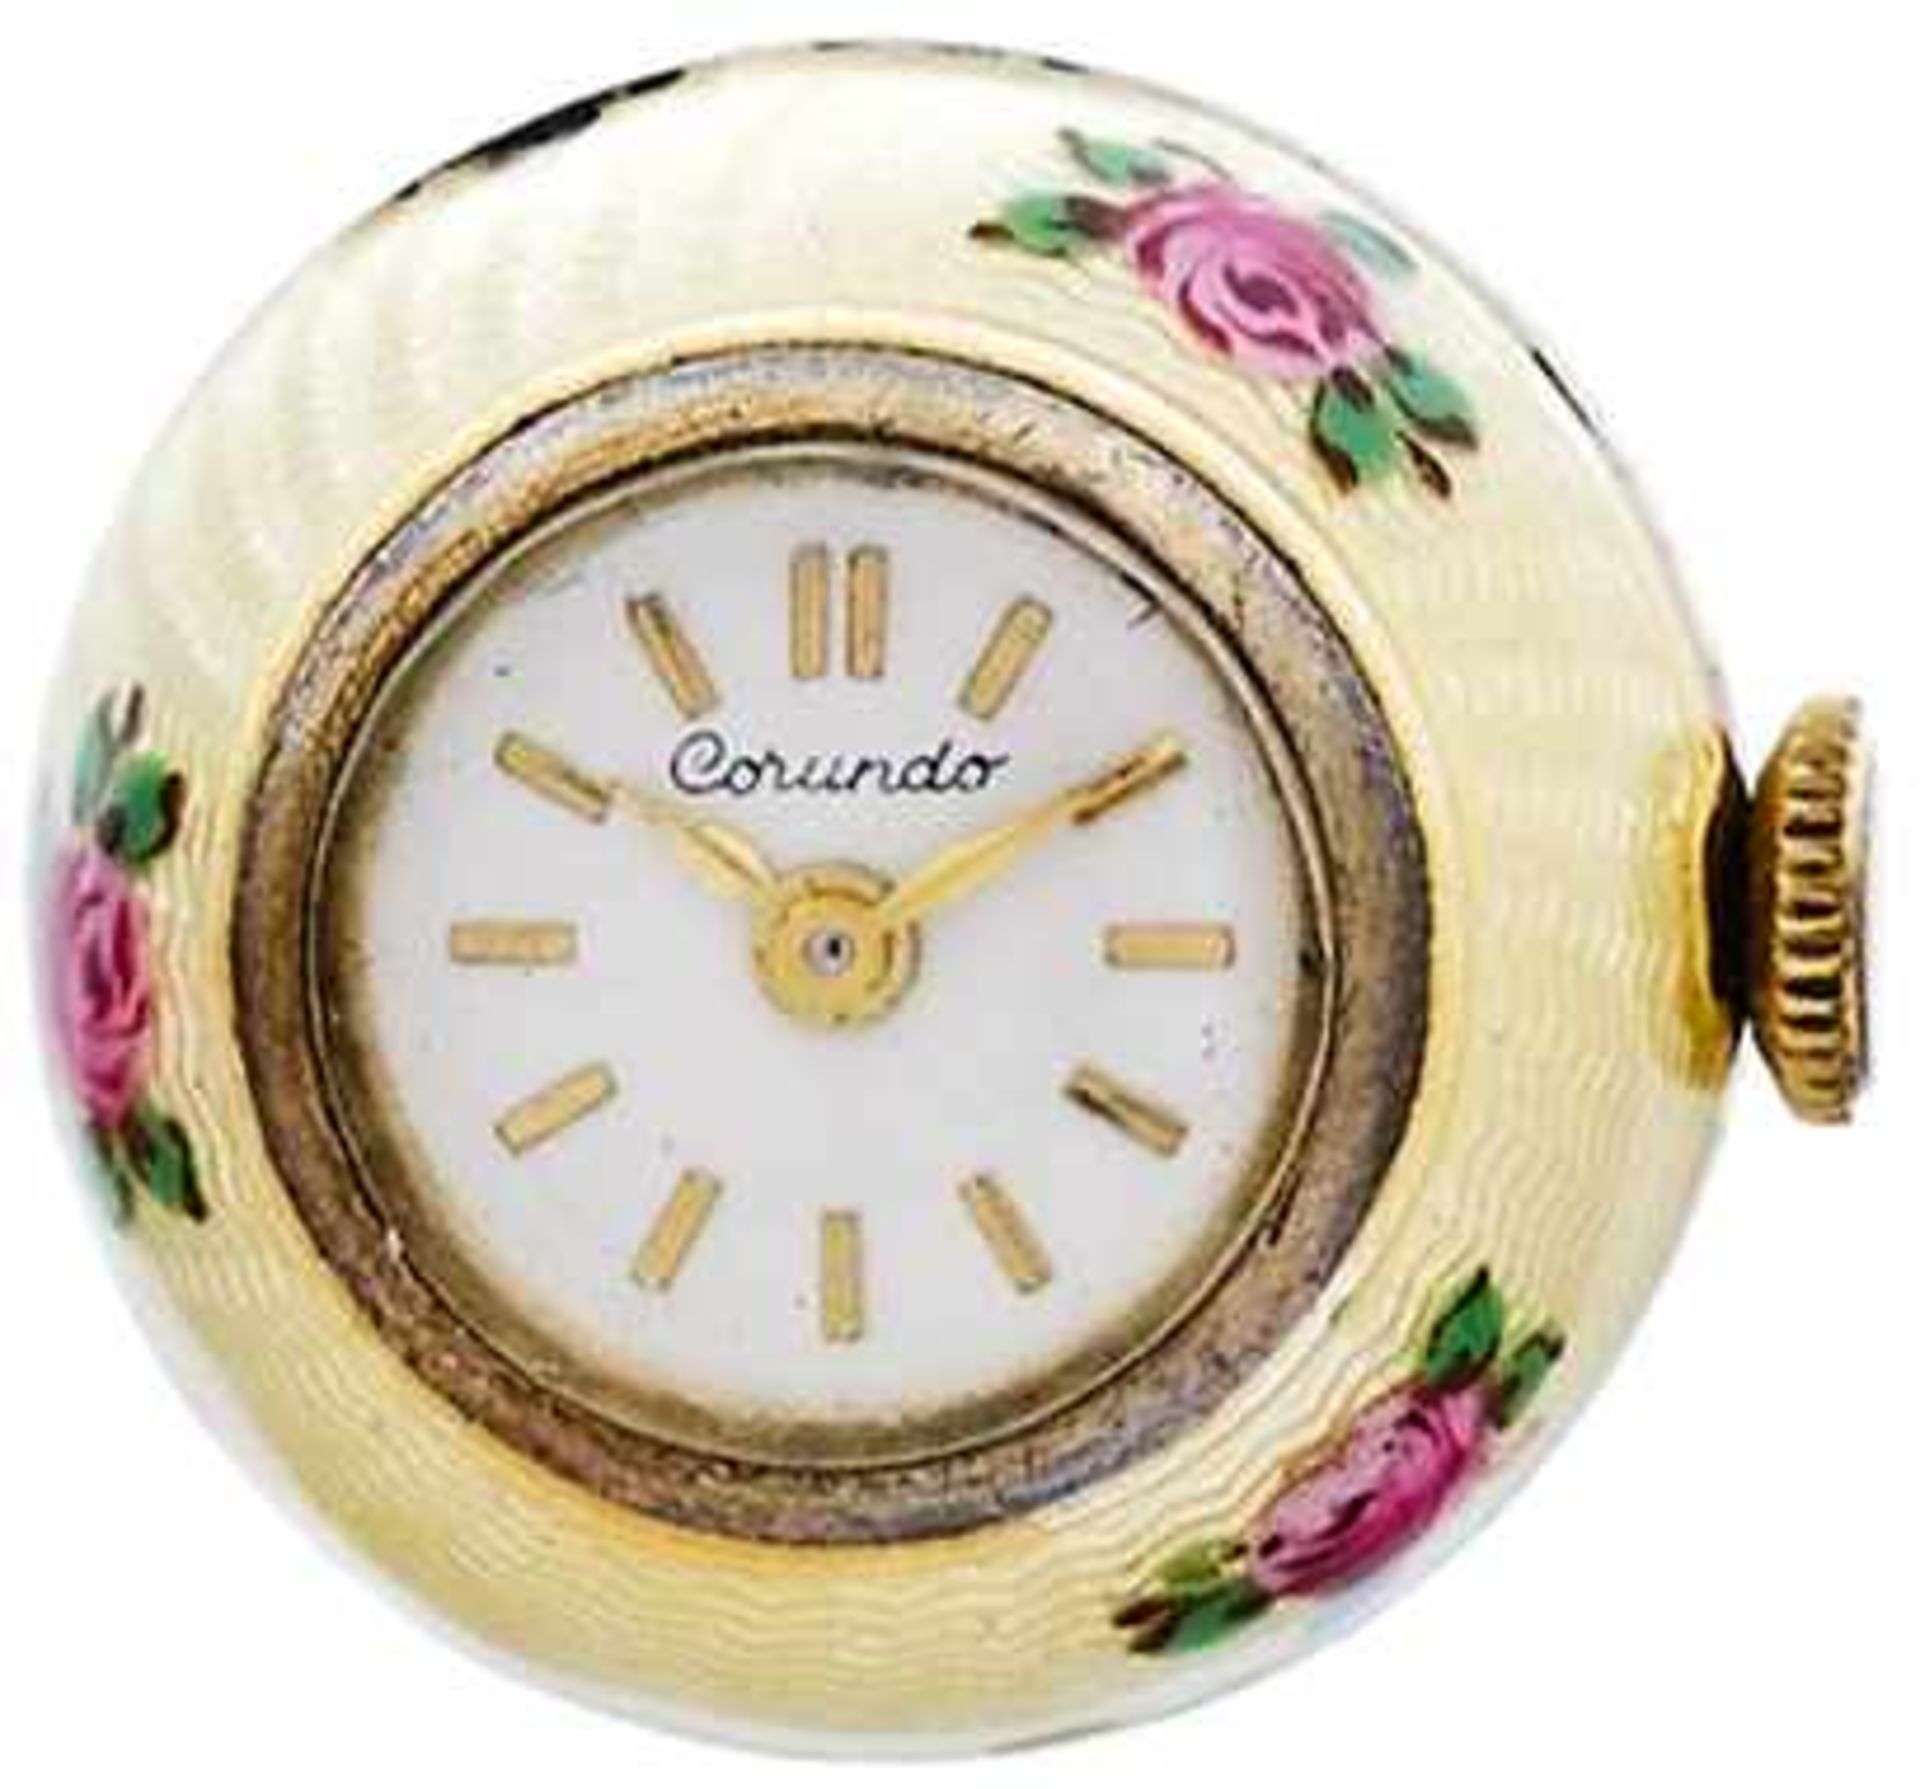 Taschenuhren ab 1901 Zierliche kugelförmige Taschenuhr als Anhänger. Wohl Mitte 20. Jh. Uhrgehäuse